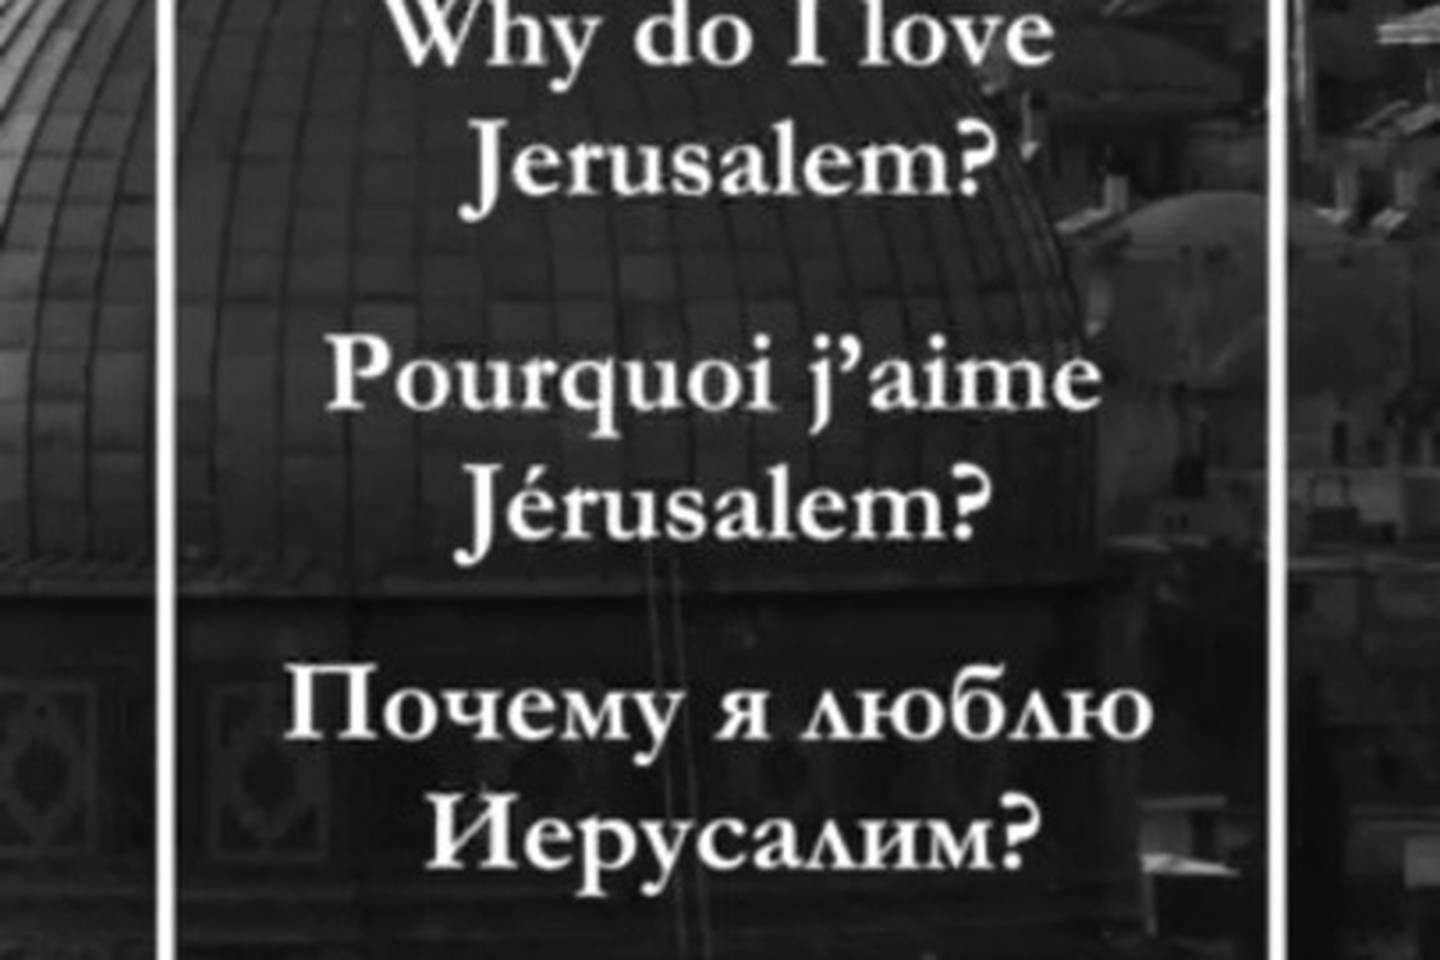 We love Jerusalem